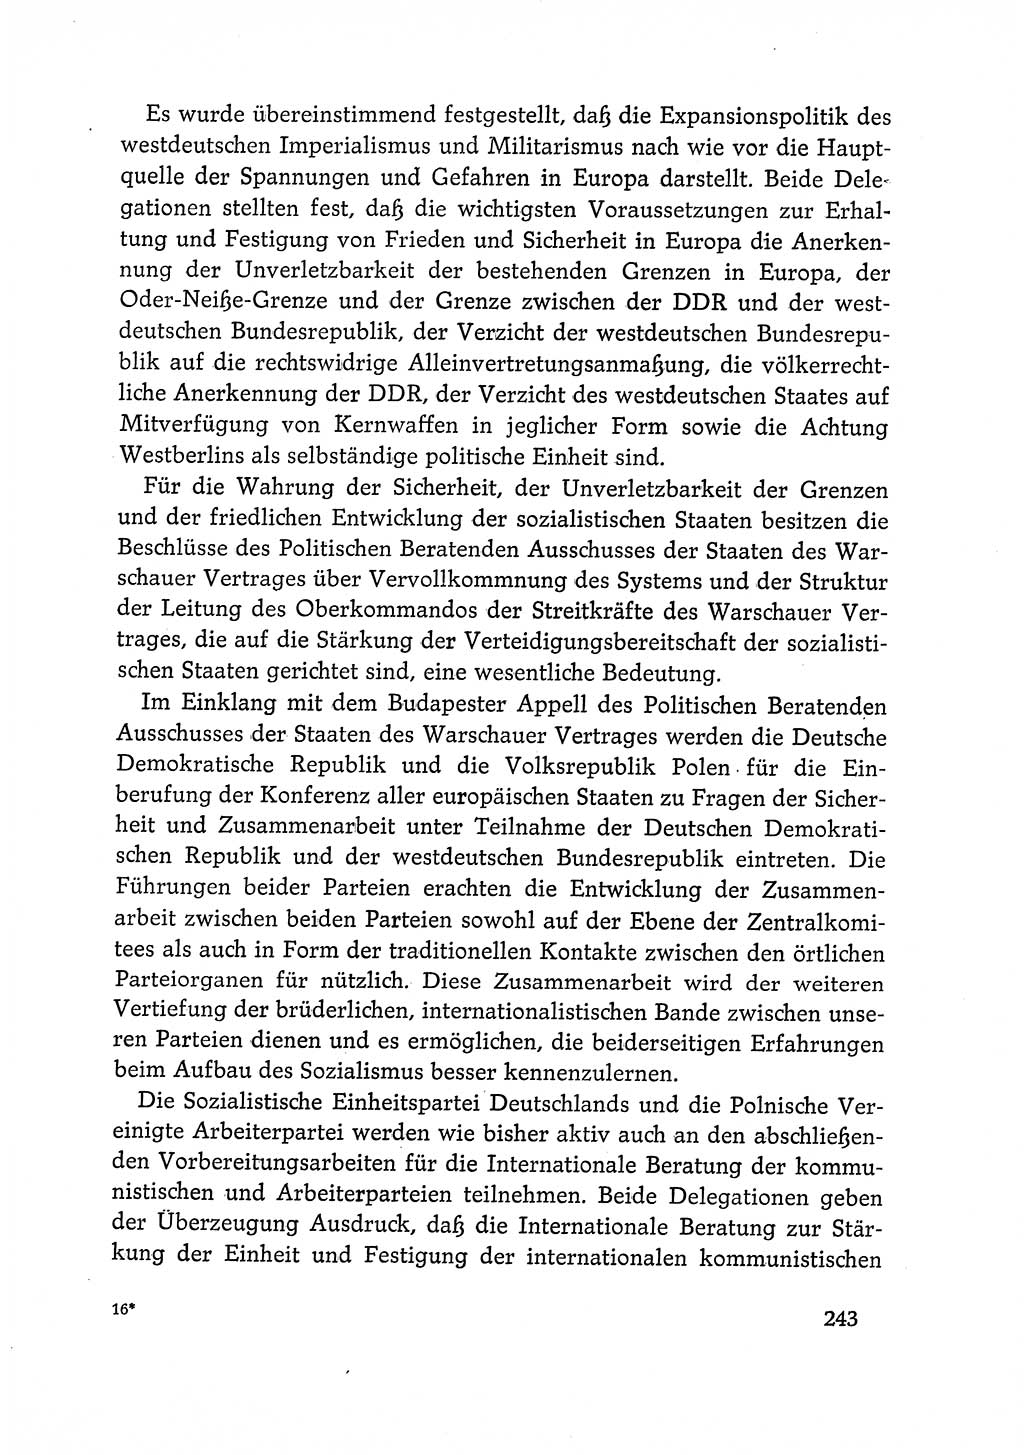 Dokumente der Sozialistischen Einheitspartei Deutschlands (SED) [Deutsche Demokratische Republik (DDR)] 1968-1969, Seite 243 (Dok. SED DDR 1968-1969, S. 243)